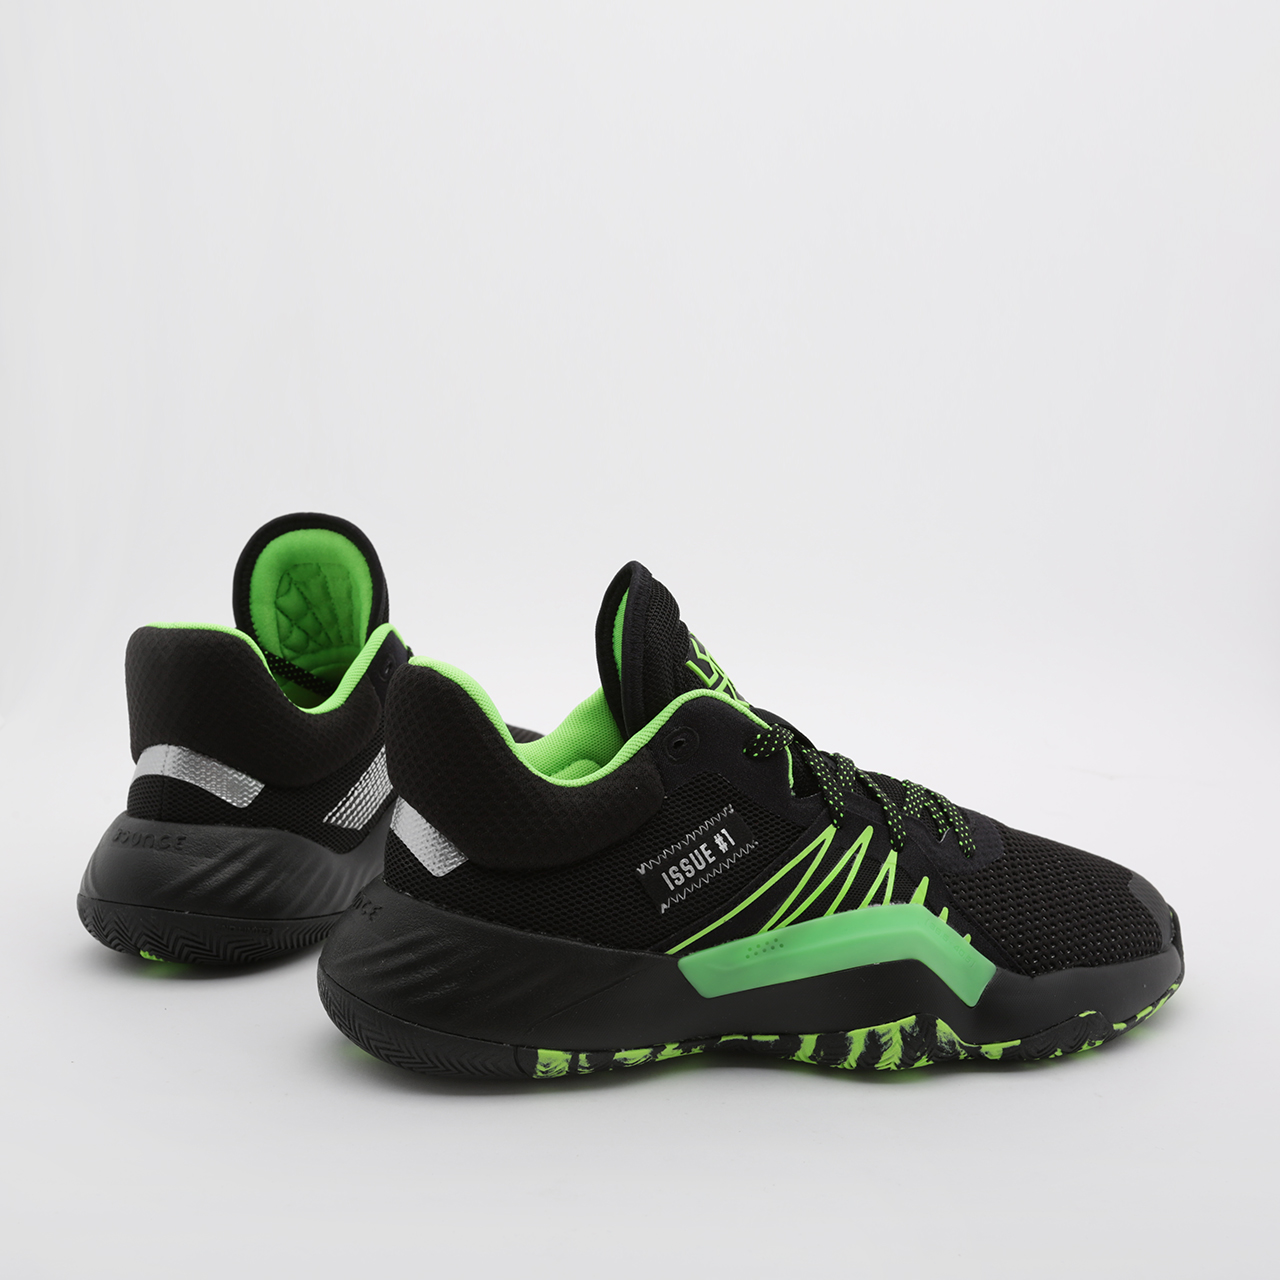 мужские черные баскетбольные кроссовки adidas D.O.N. Issue #1 EF2805 - цена, описание, фото 1